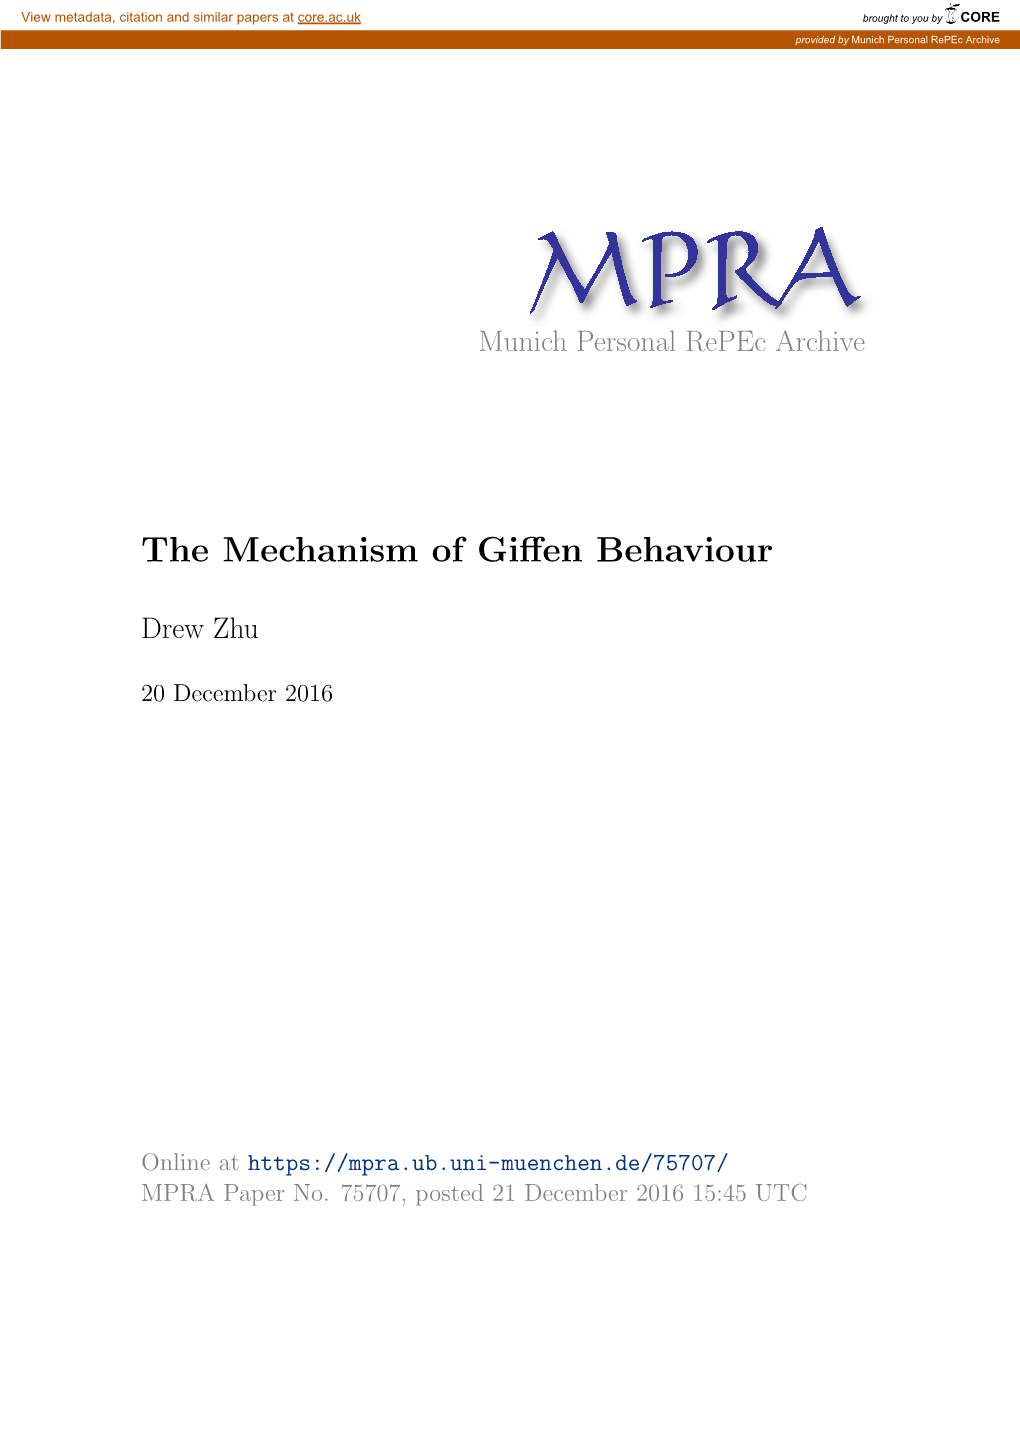 The Mechanism of Giffen Behaviour